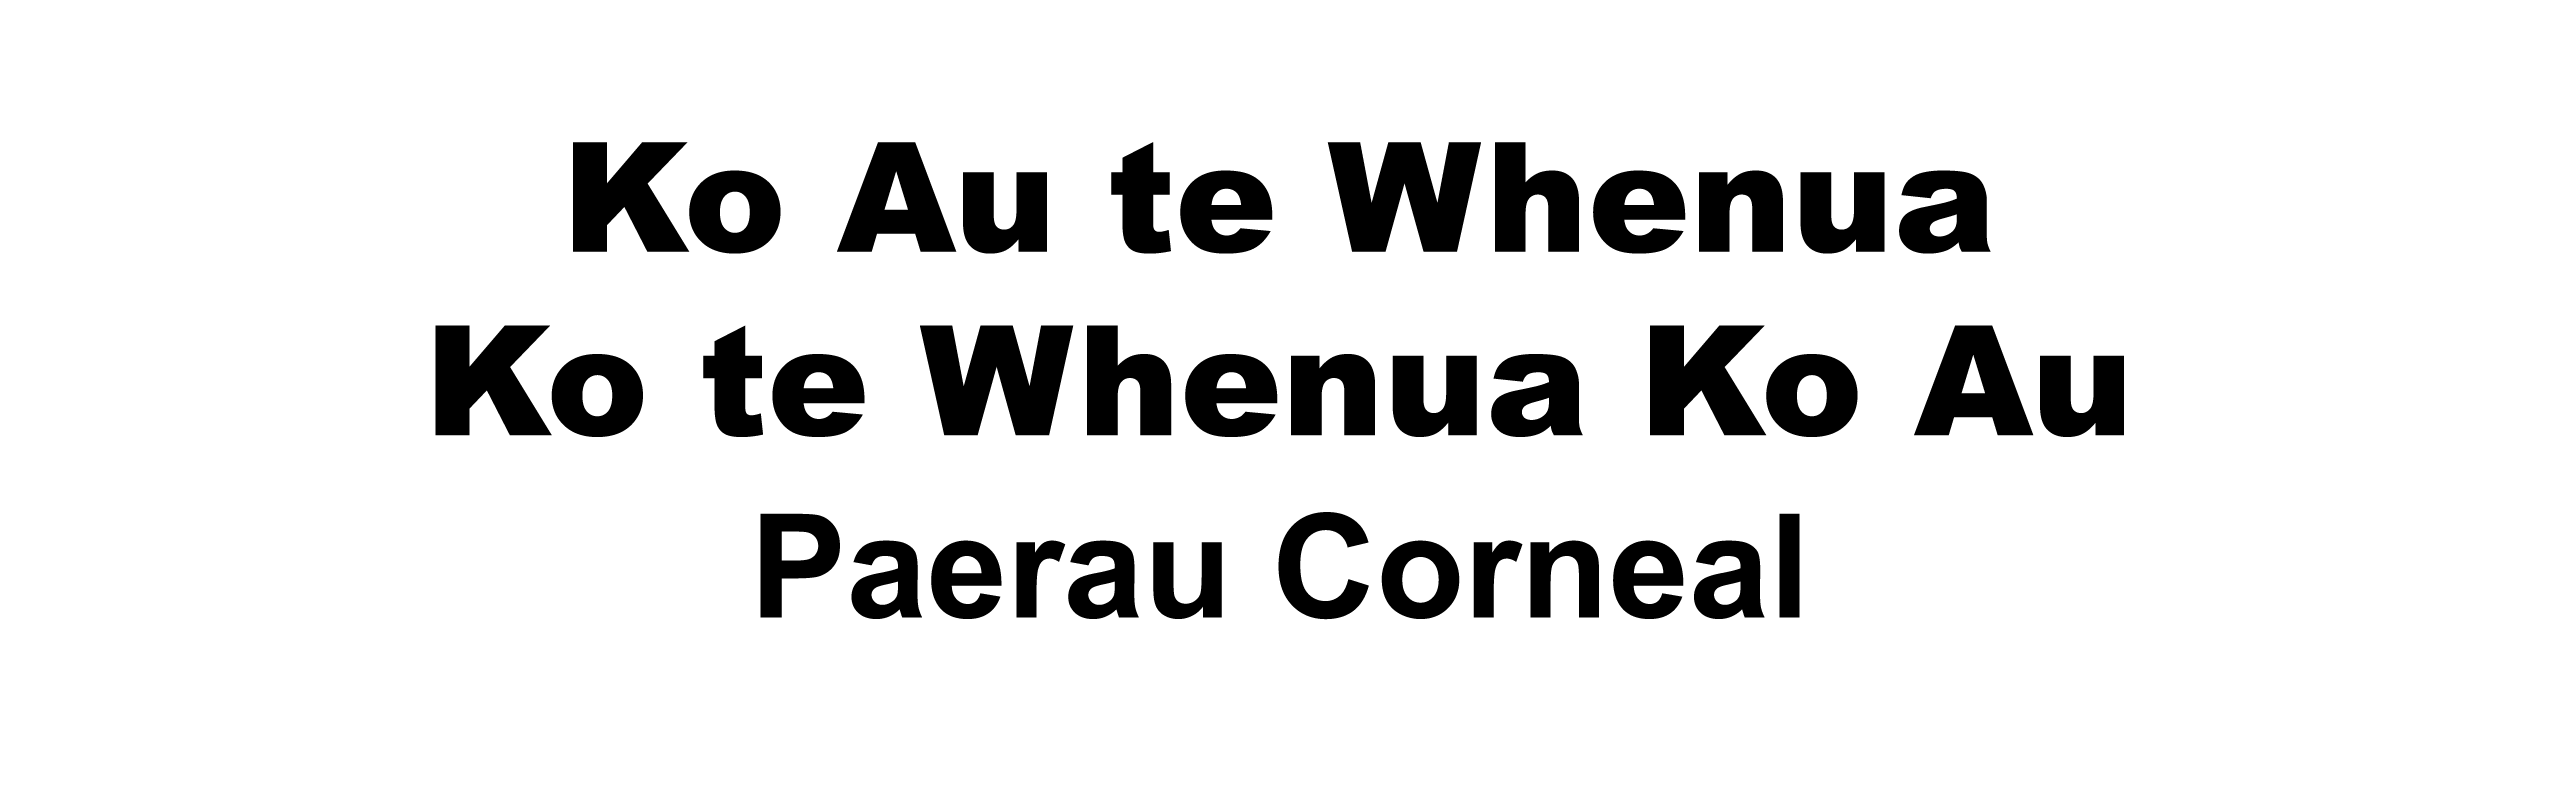 Paerau Corneal